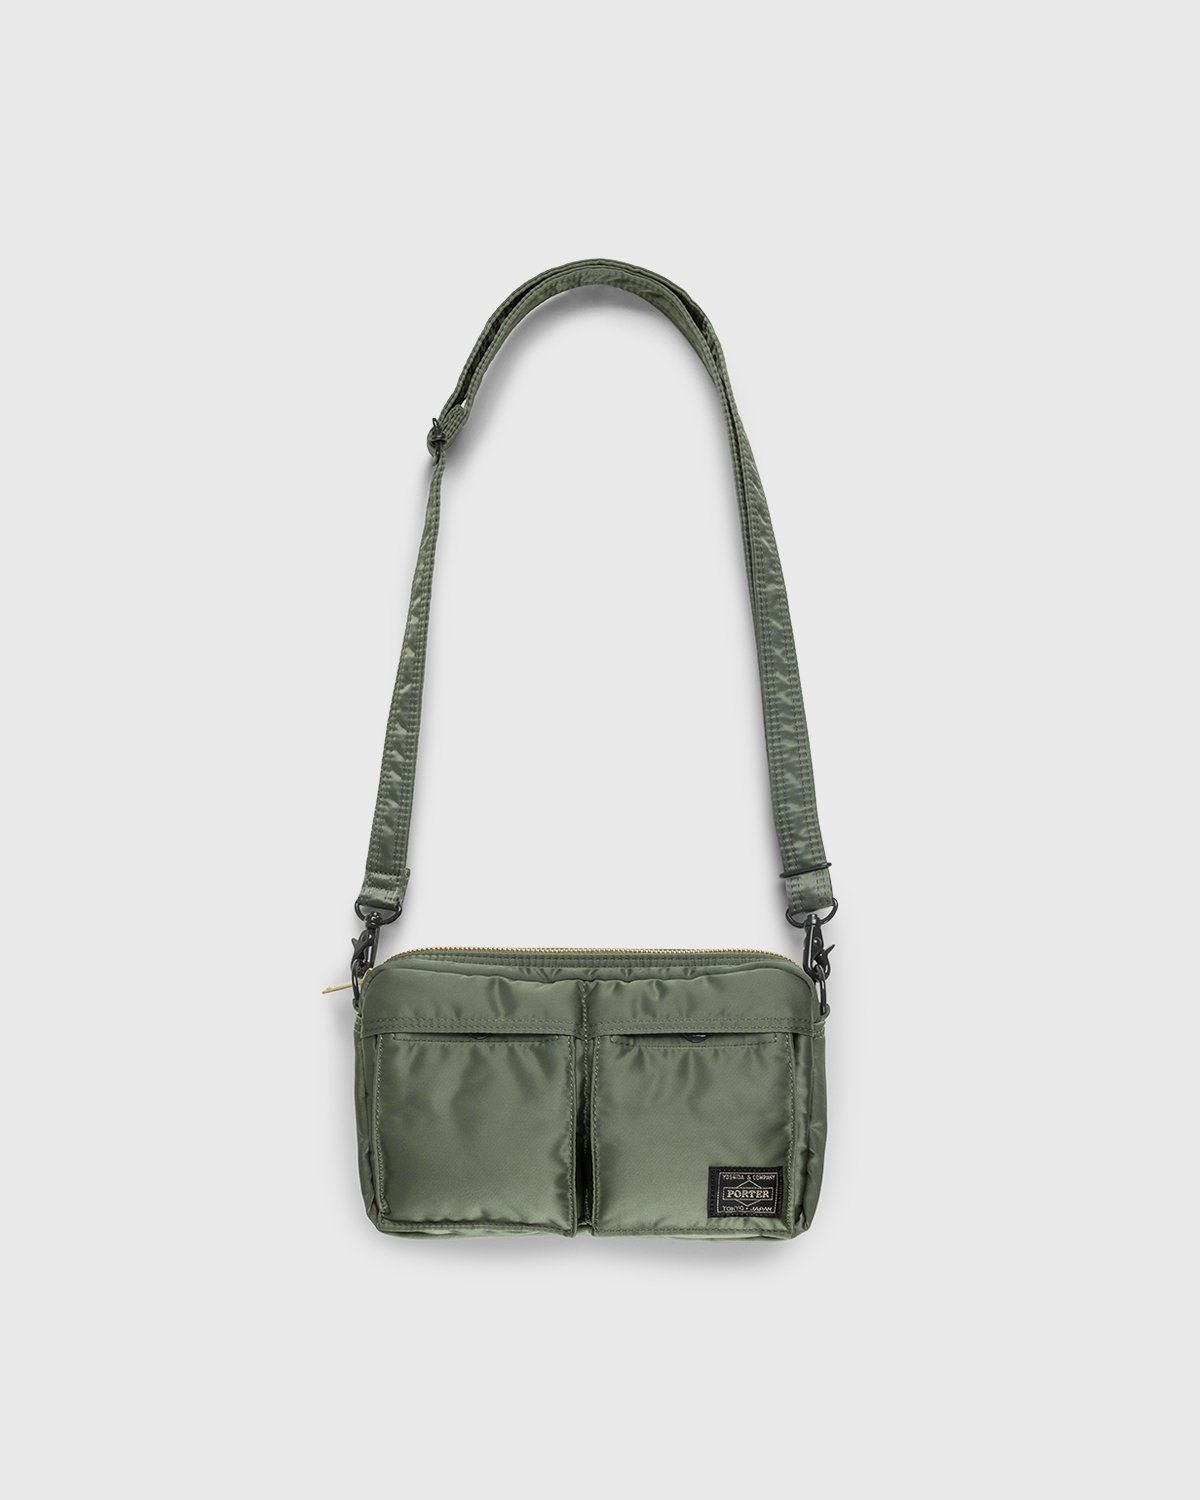 Porter-Yoshida & Co. – Tanker Shoulder Bag Sage Green - Bags - Green - Image 1